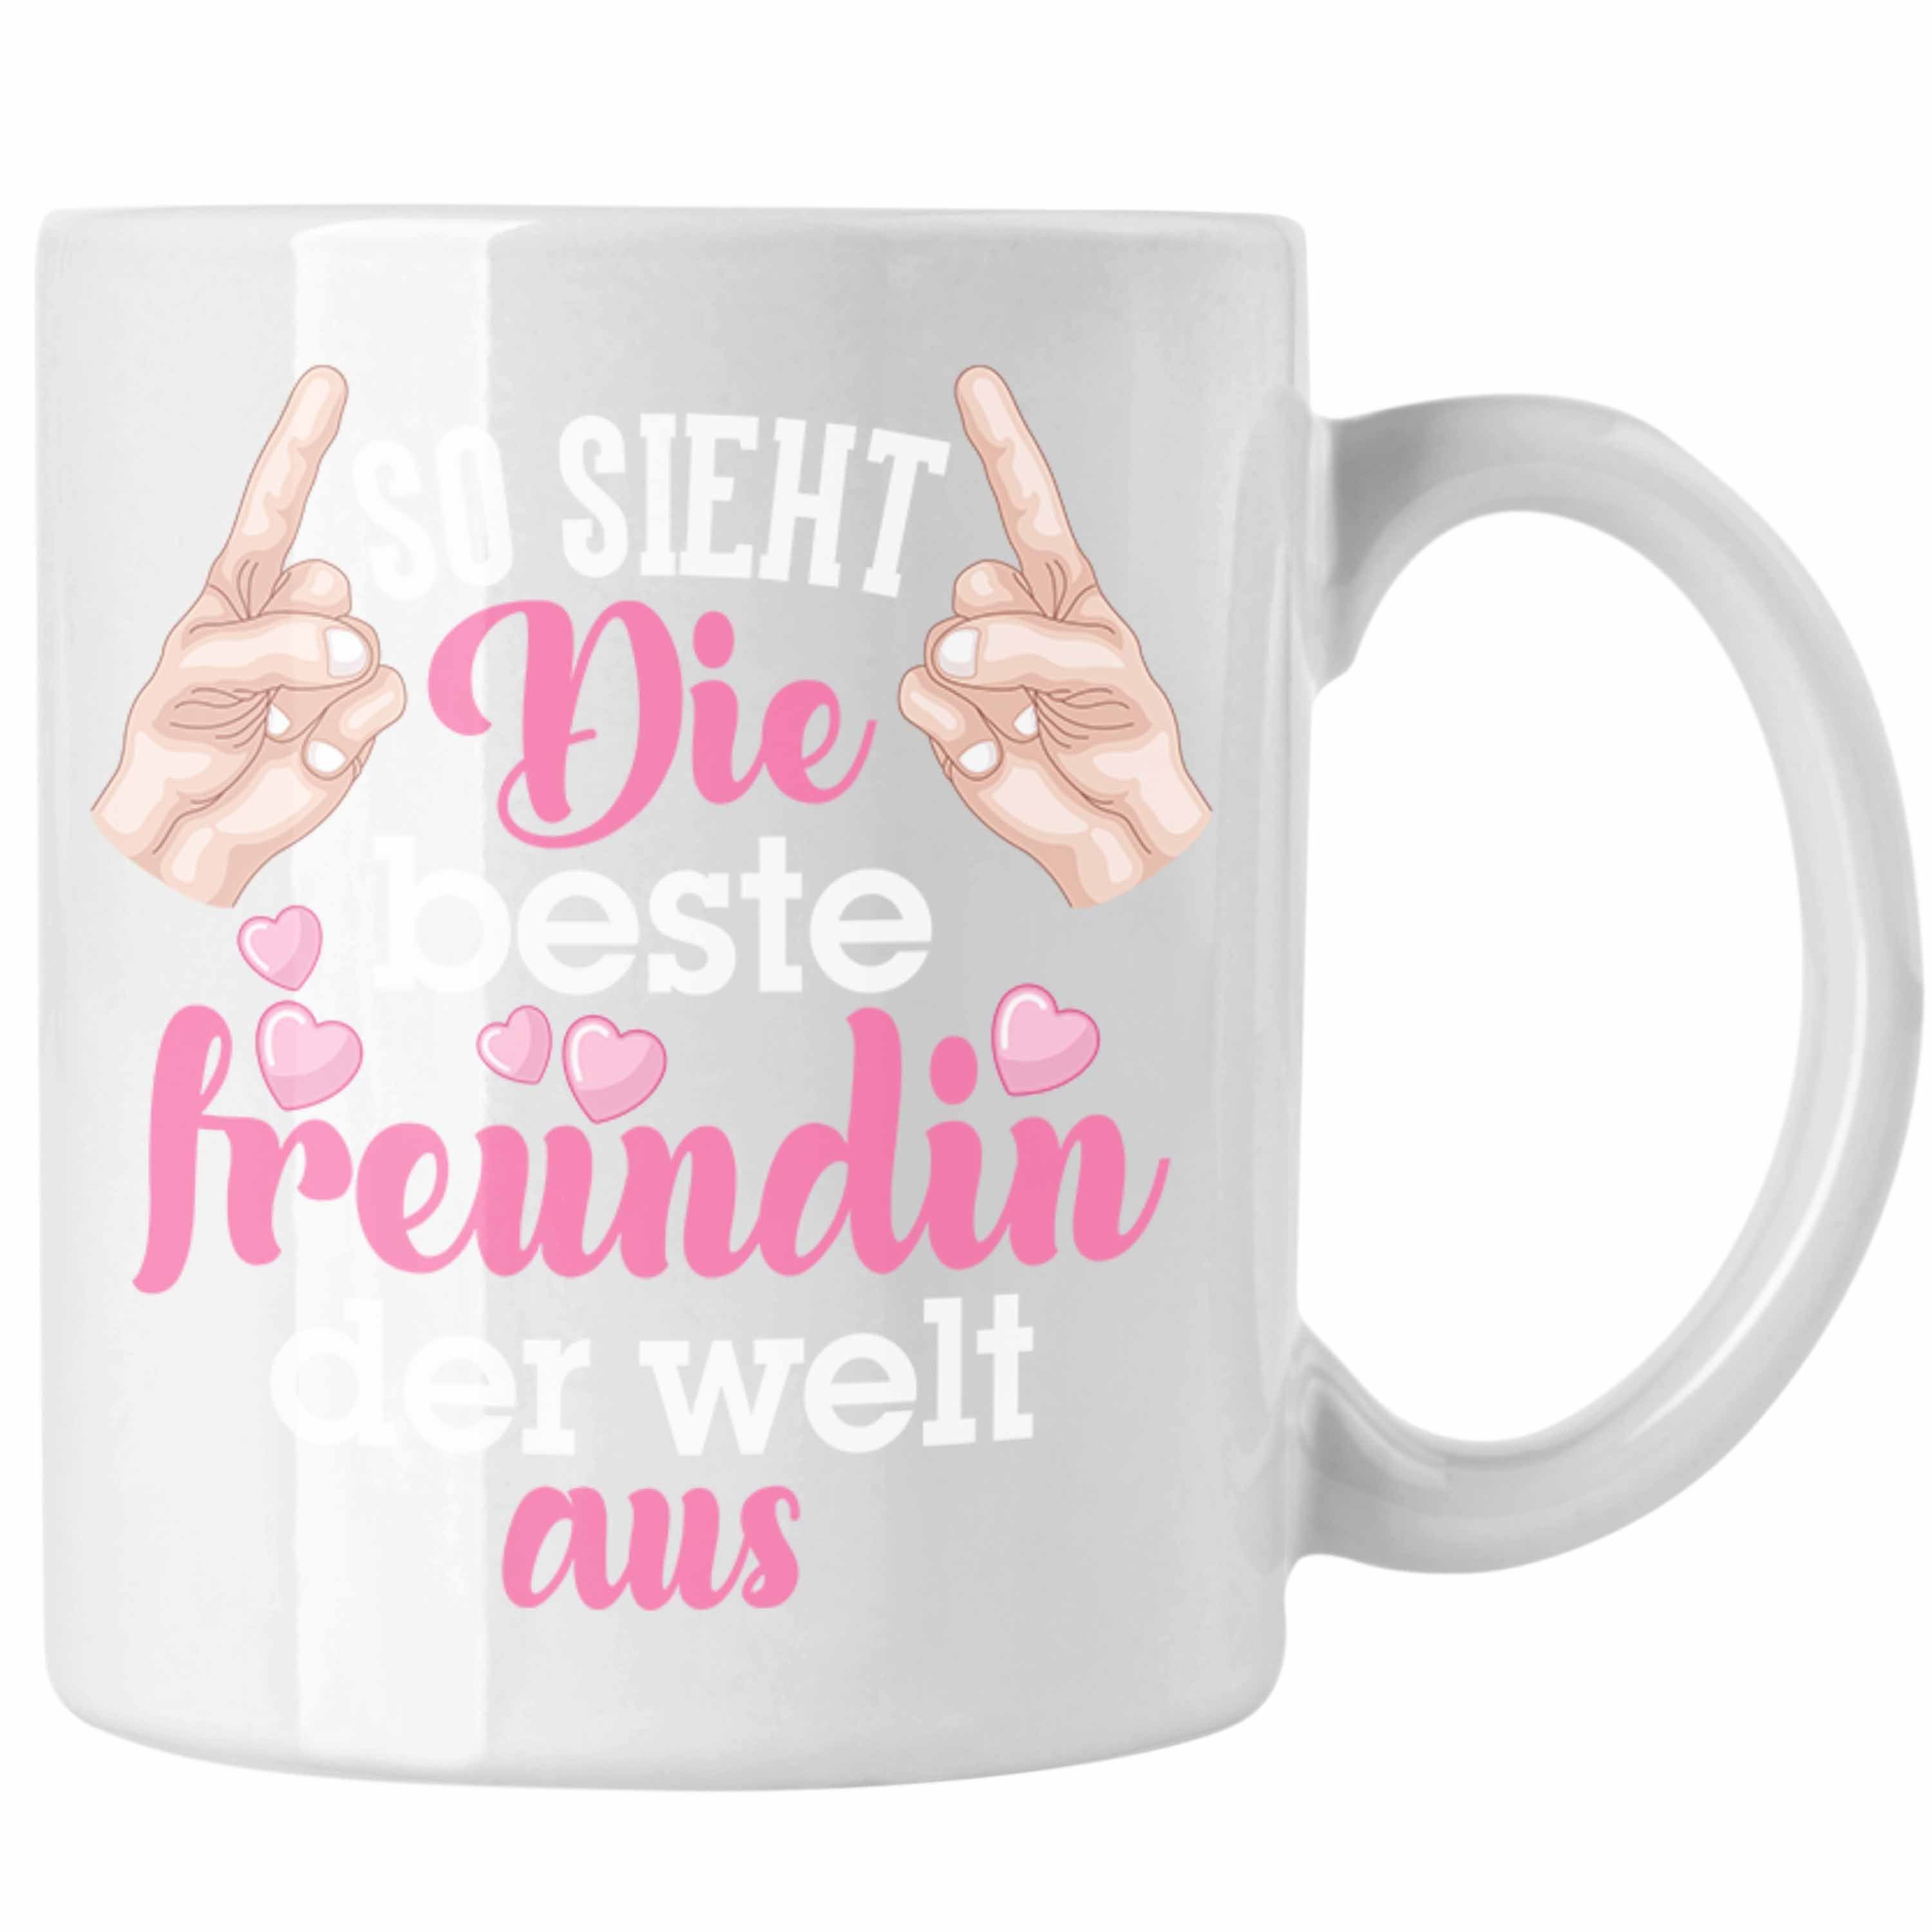 Trendation Tasse Trendation - Beste Freundin Tasse Geschenk Kaffeetasse Geschenkidee BFF Allerbeste Freundin Spruch Geburtstag Freundinnen Geschenkidee Weiss